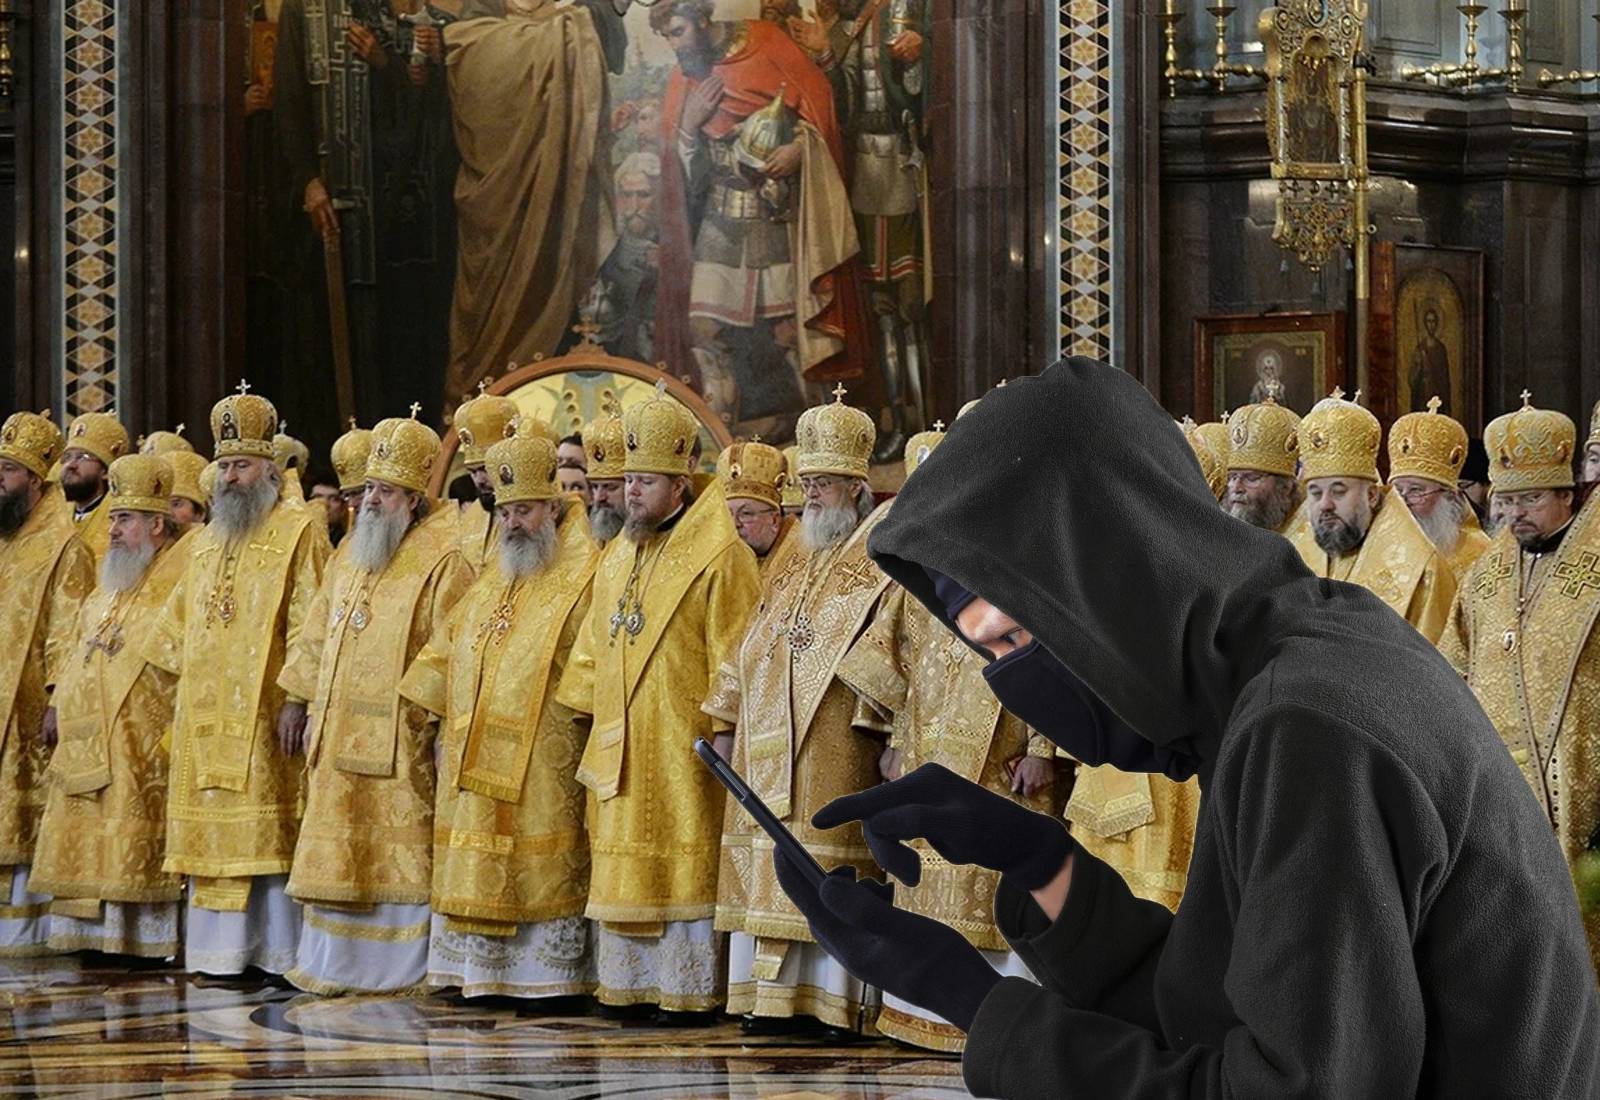 Телефонные жулики нацелились на православных священников